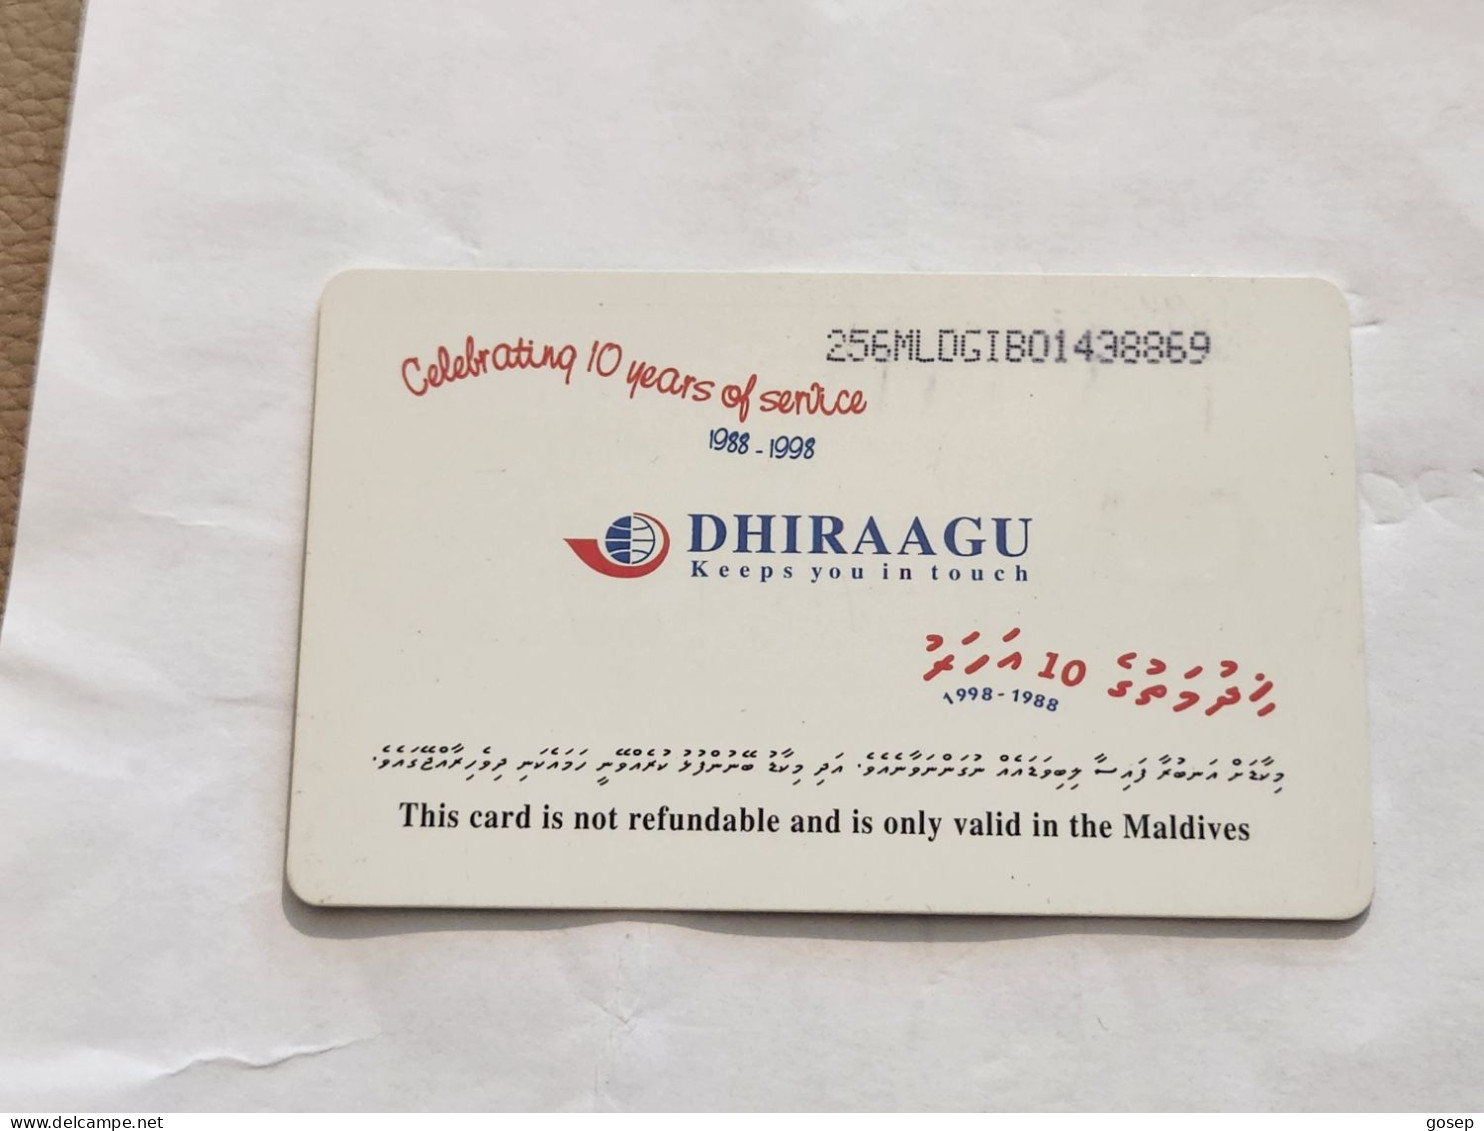 Maldives-(256MLDGIB-MAL-C-01)-save The Turtle-(42)-(RF30)-(256MLDGIB01438869)-used Card+1card Prepiad Free - Maldives